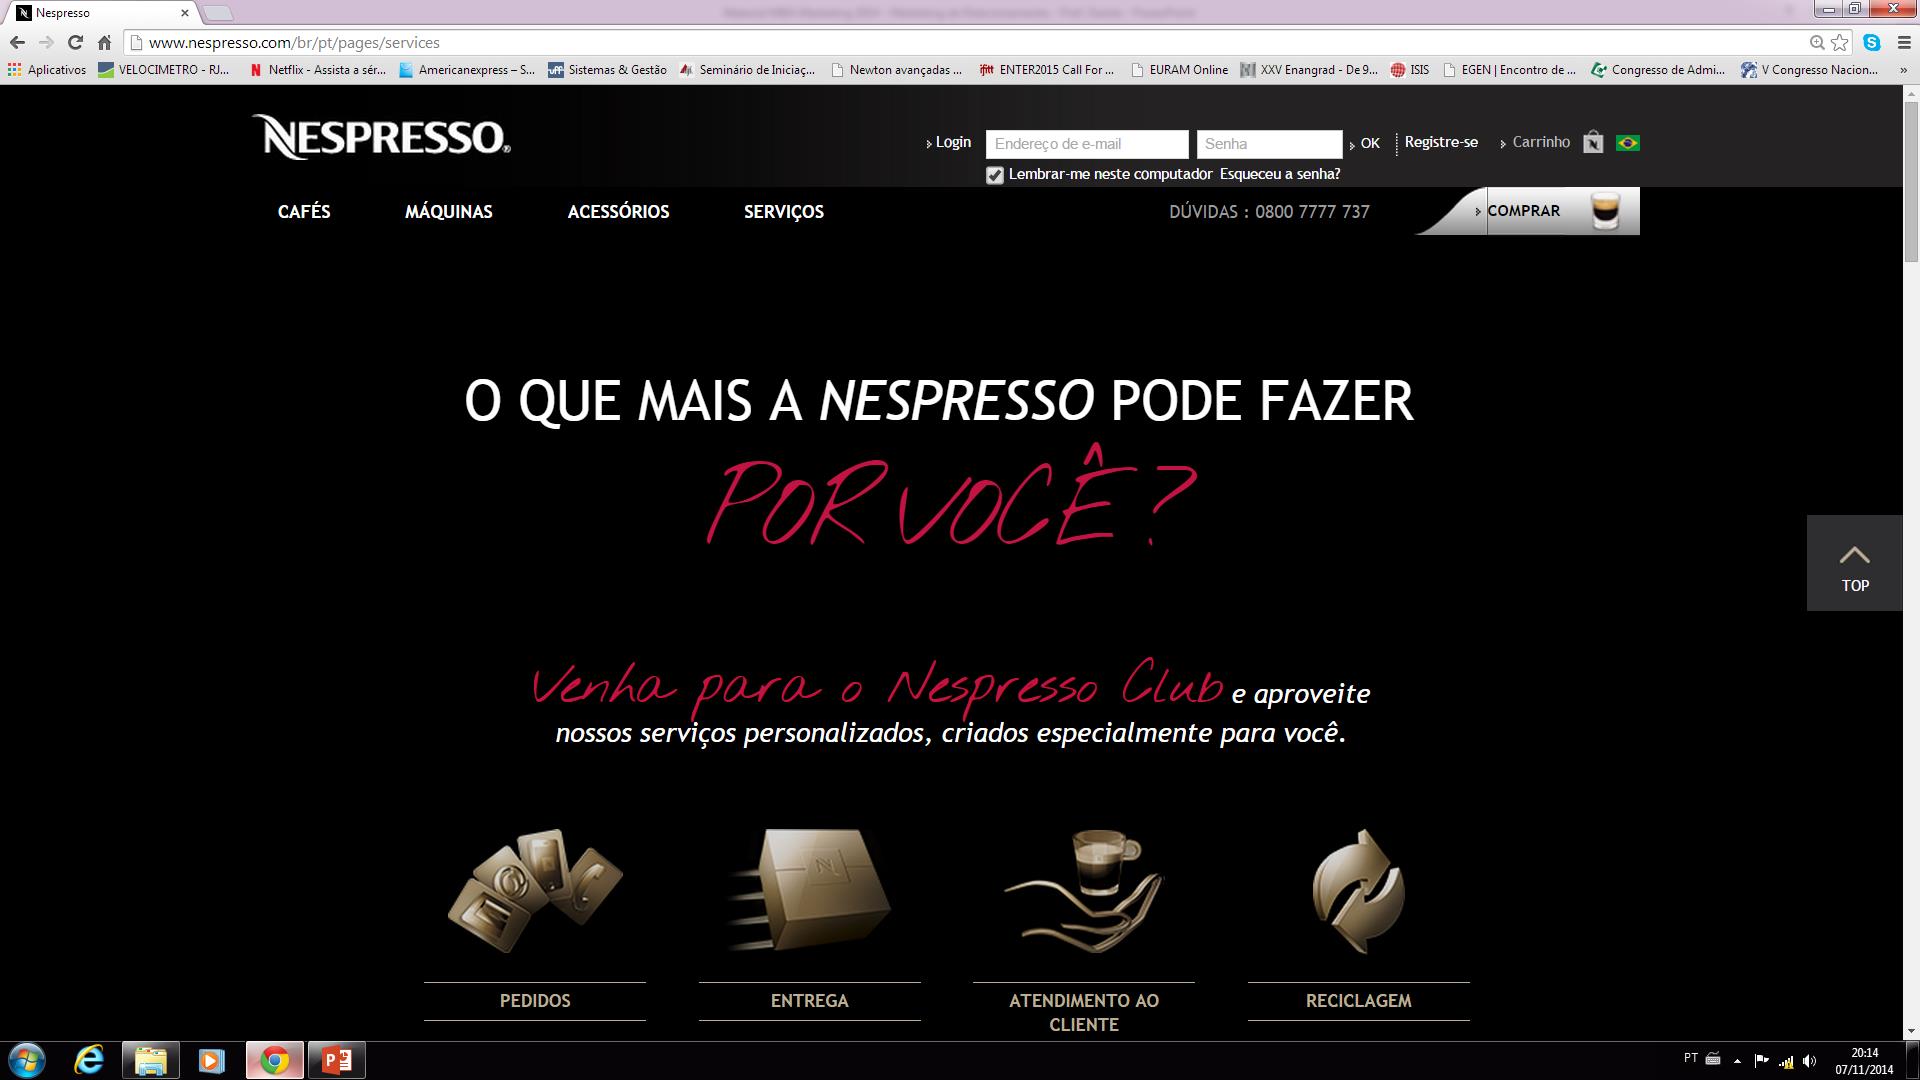 Nespresso Club www.